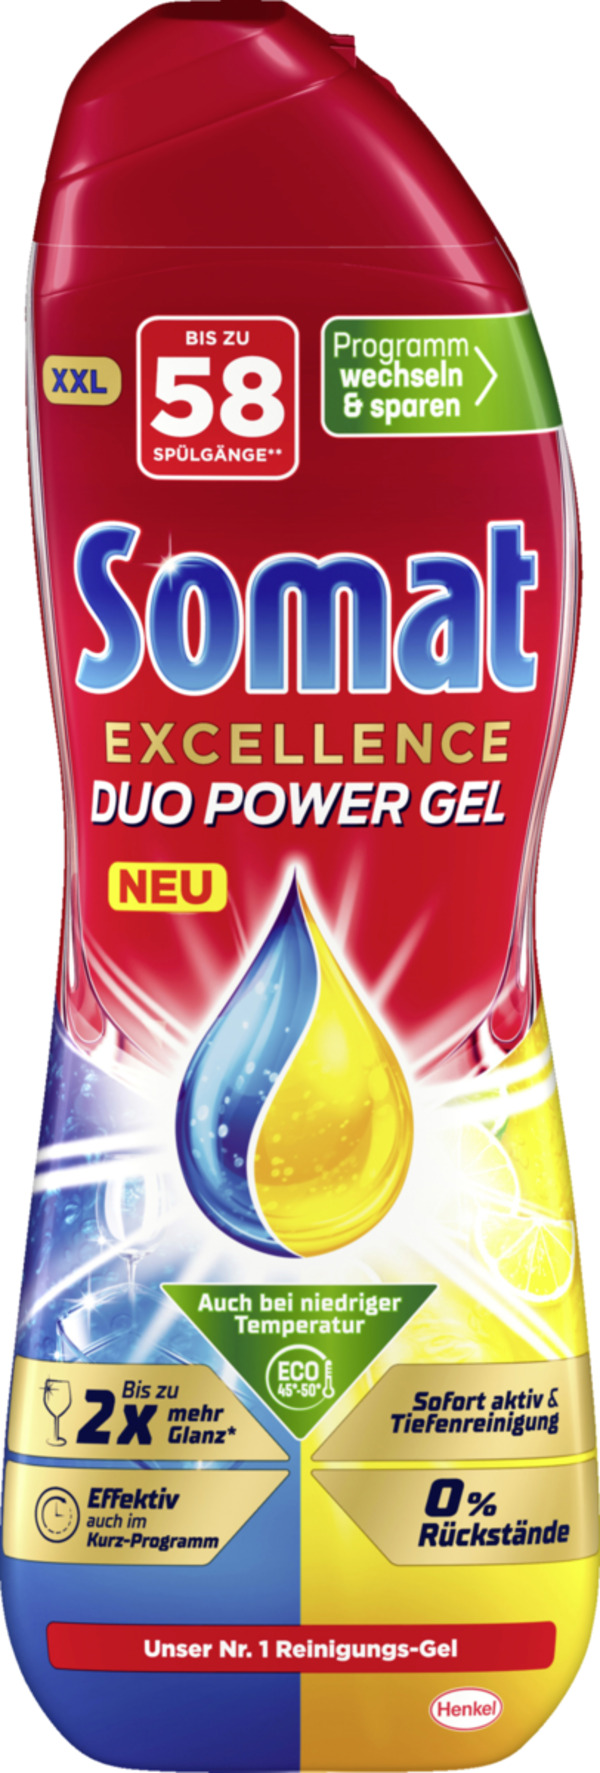 Bild 1 von Somat Excellence Duo Power Gel Zitrone & Limette